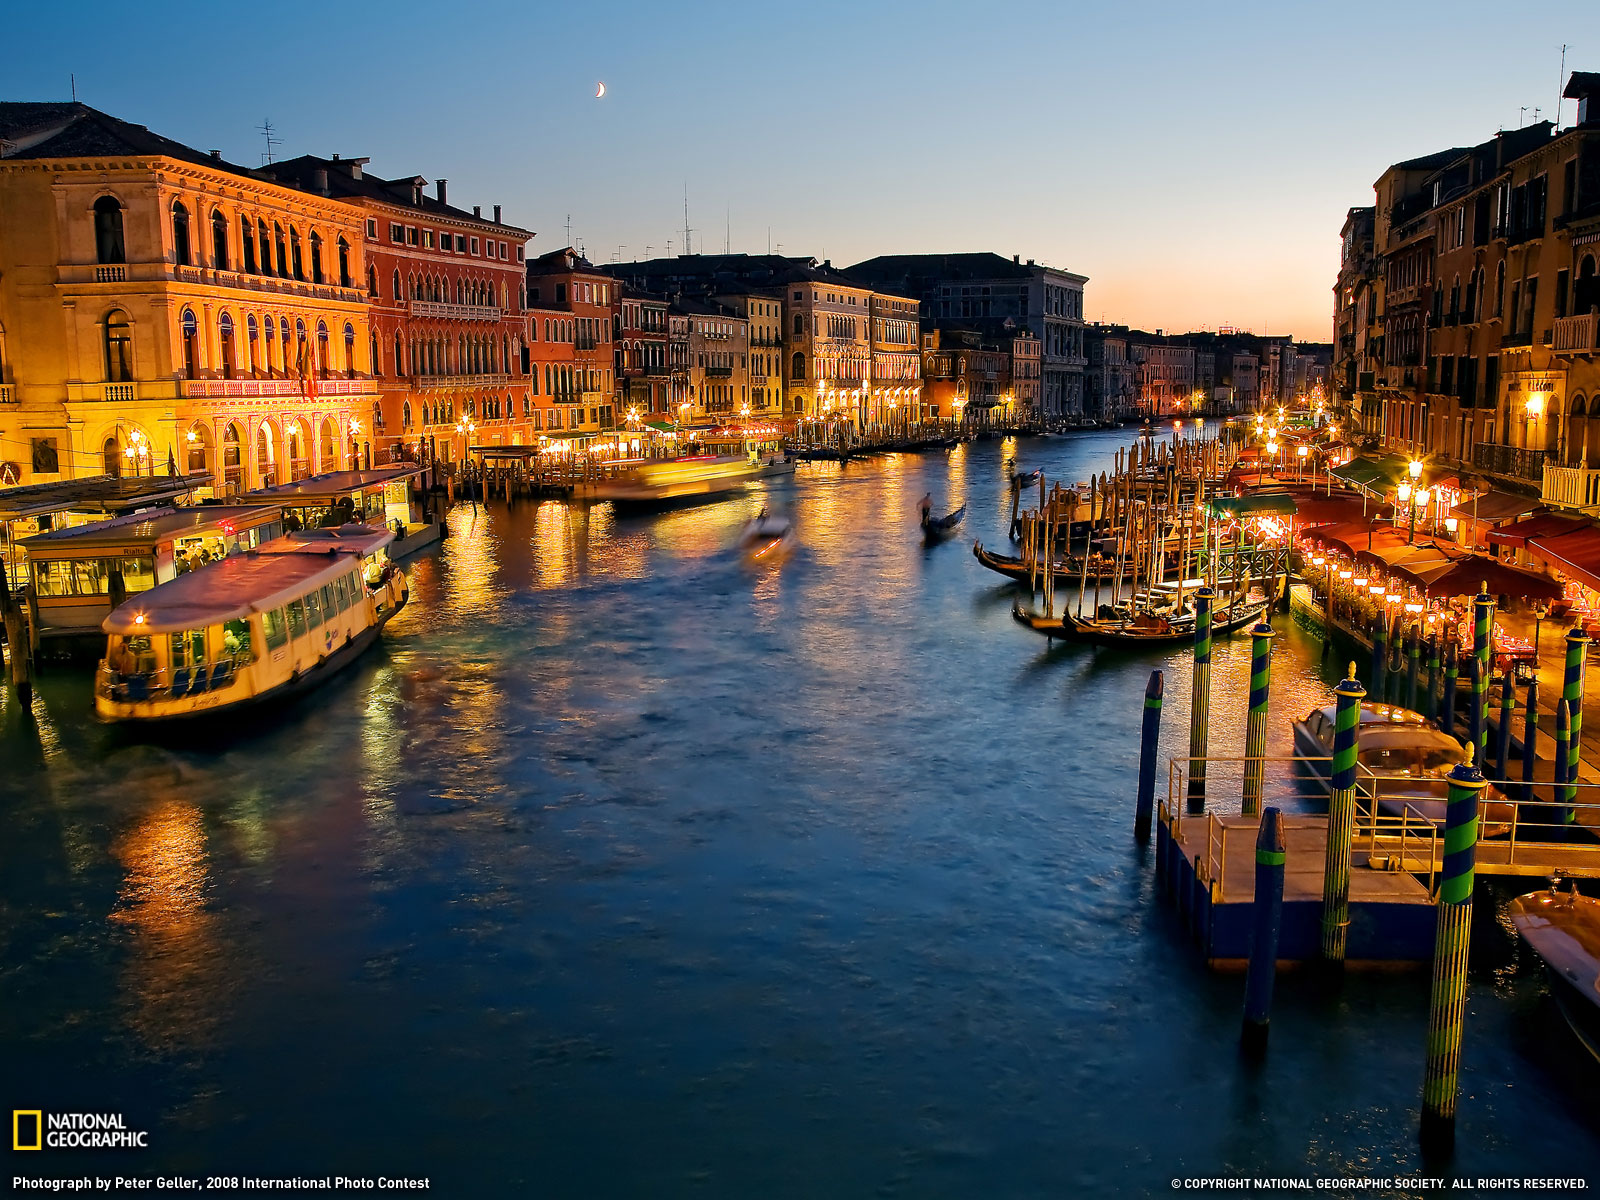 베네치아 벽지,물줄기,수로,수상 운송,운하,하늘